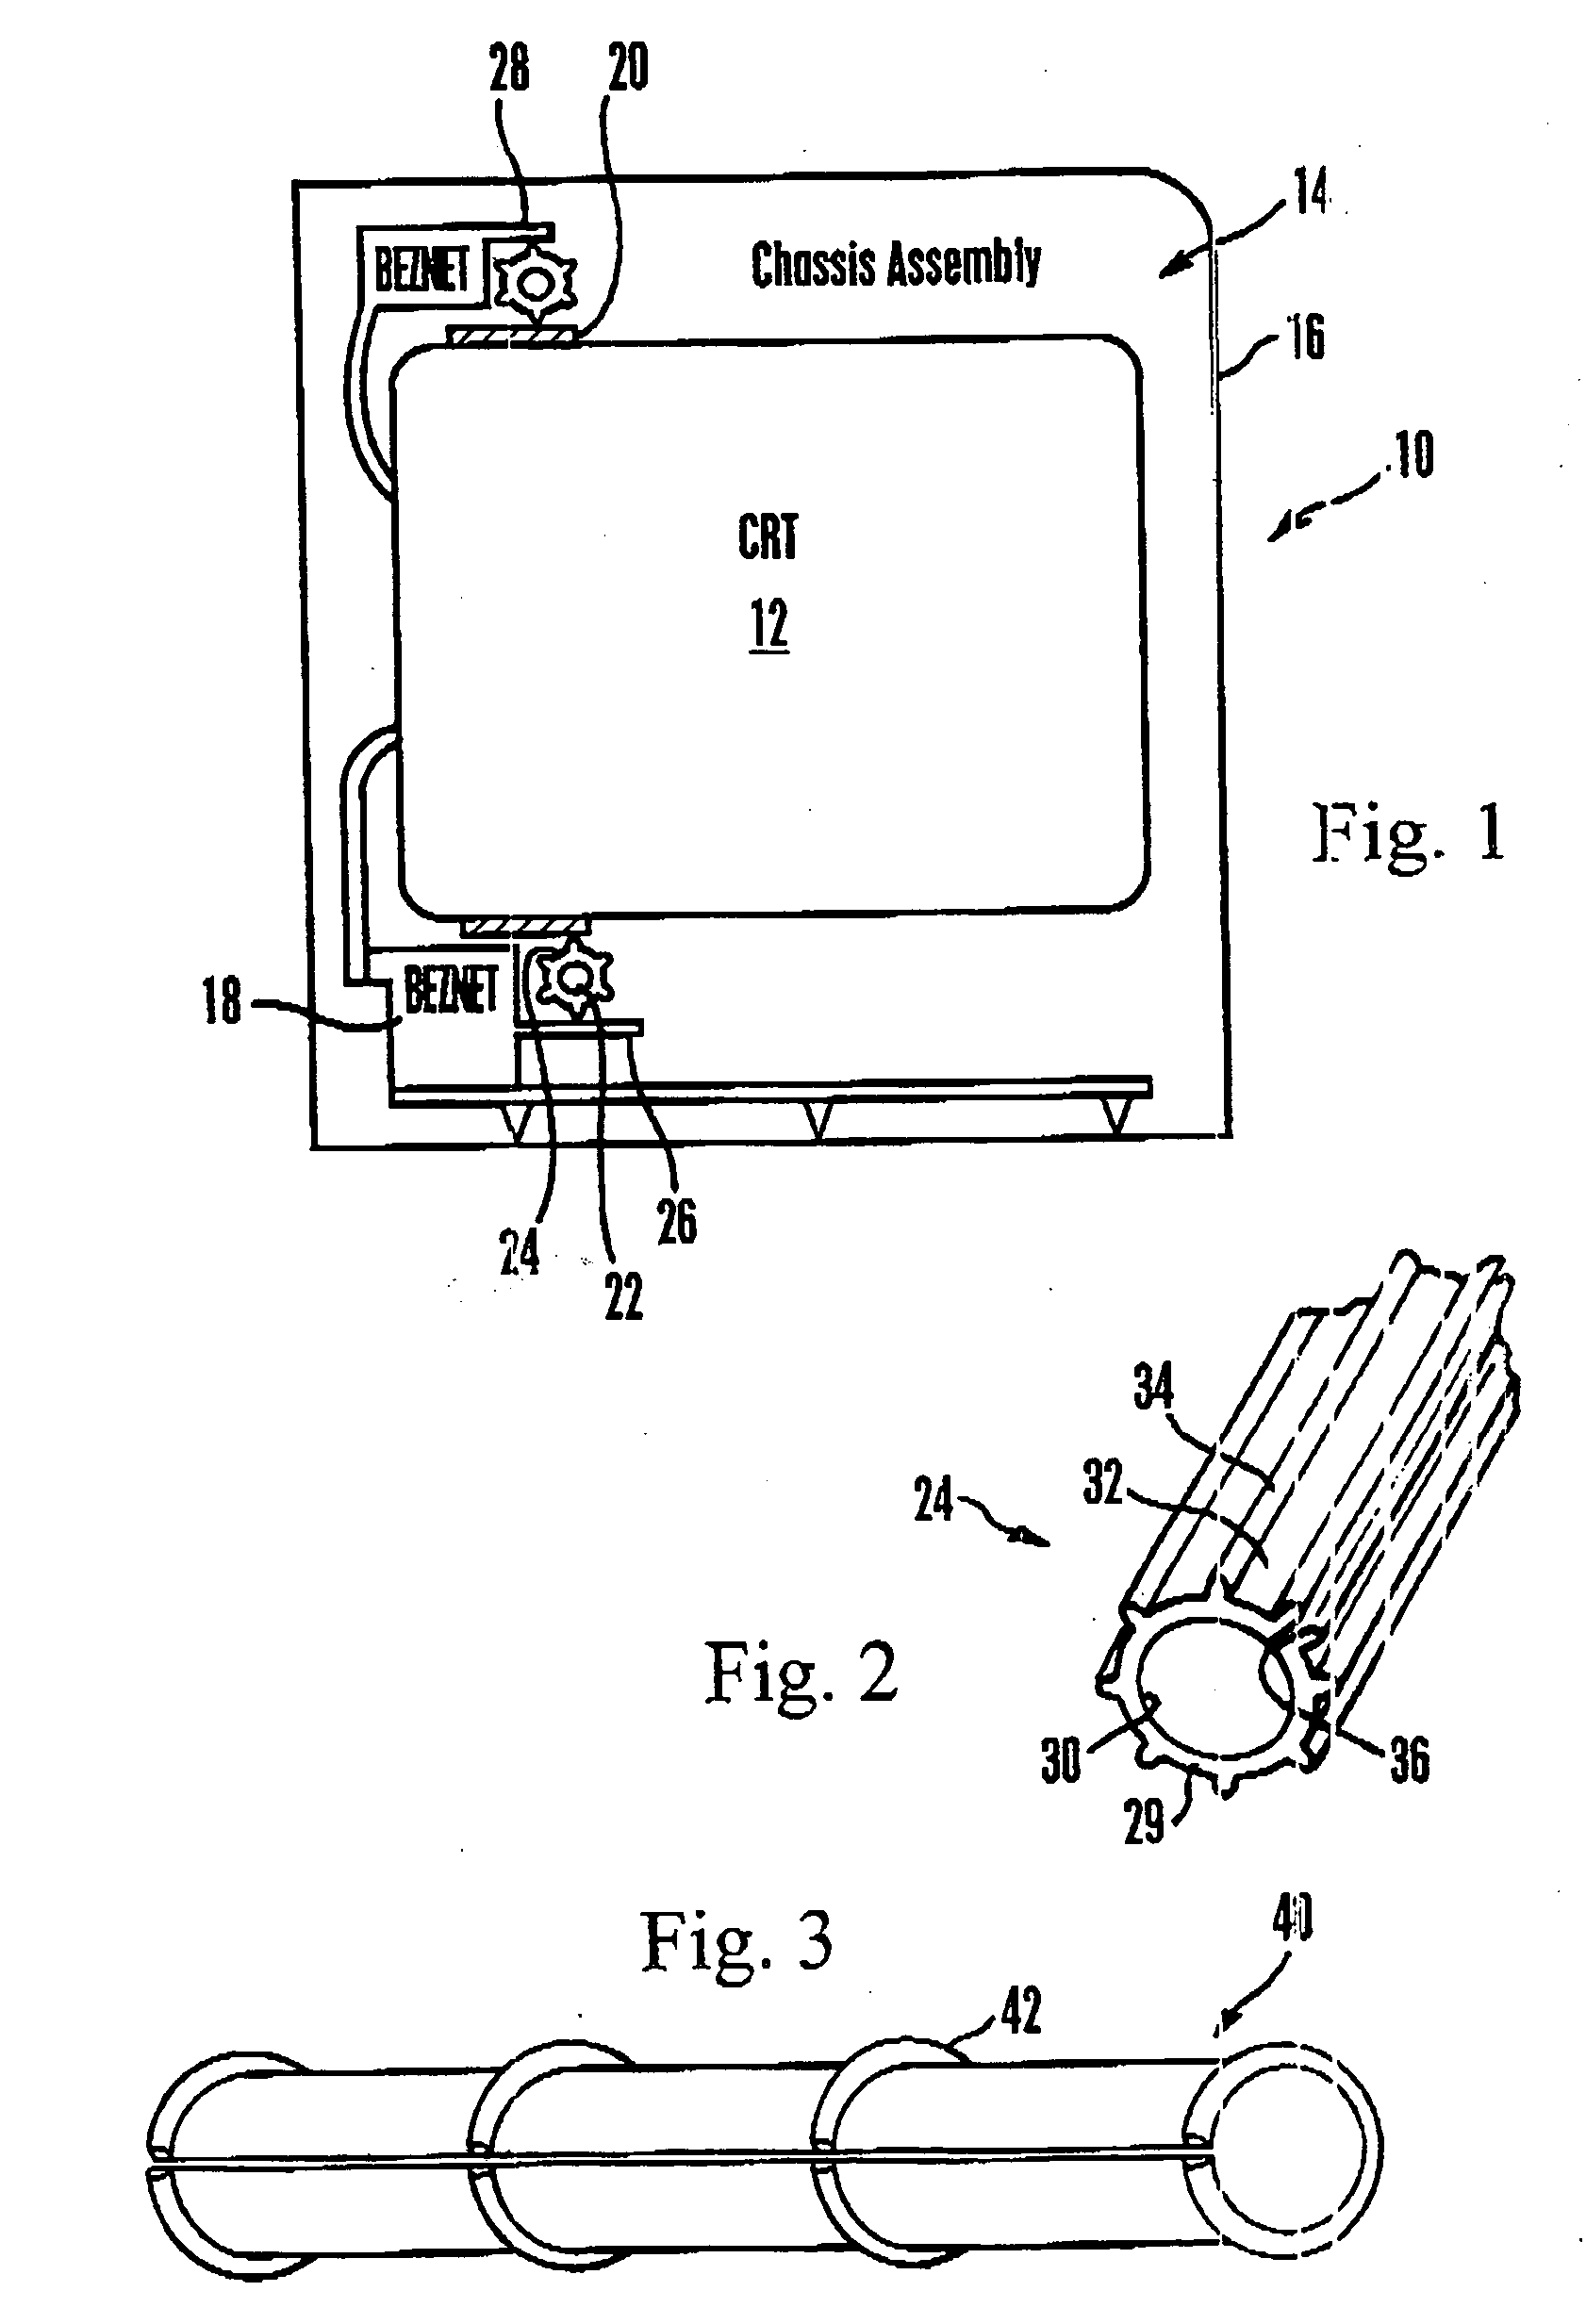 Noise dampening degaussing coil holder